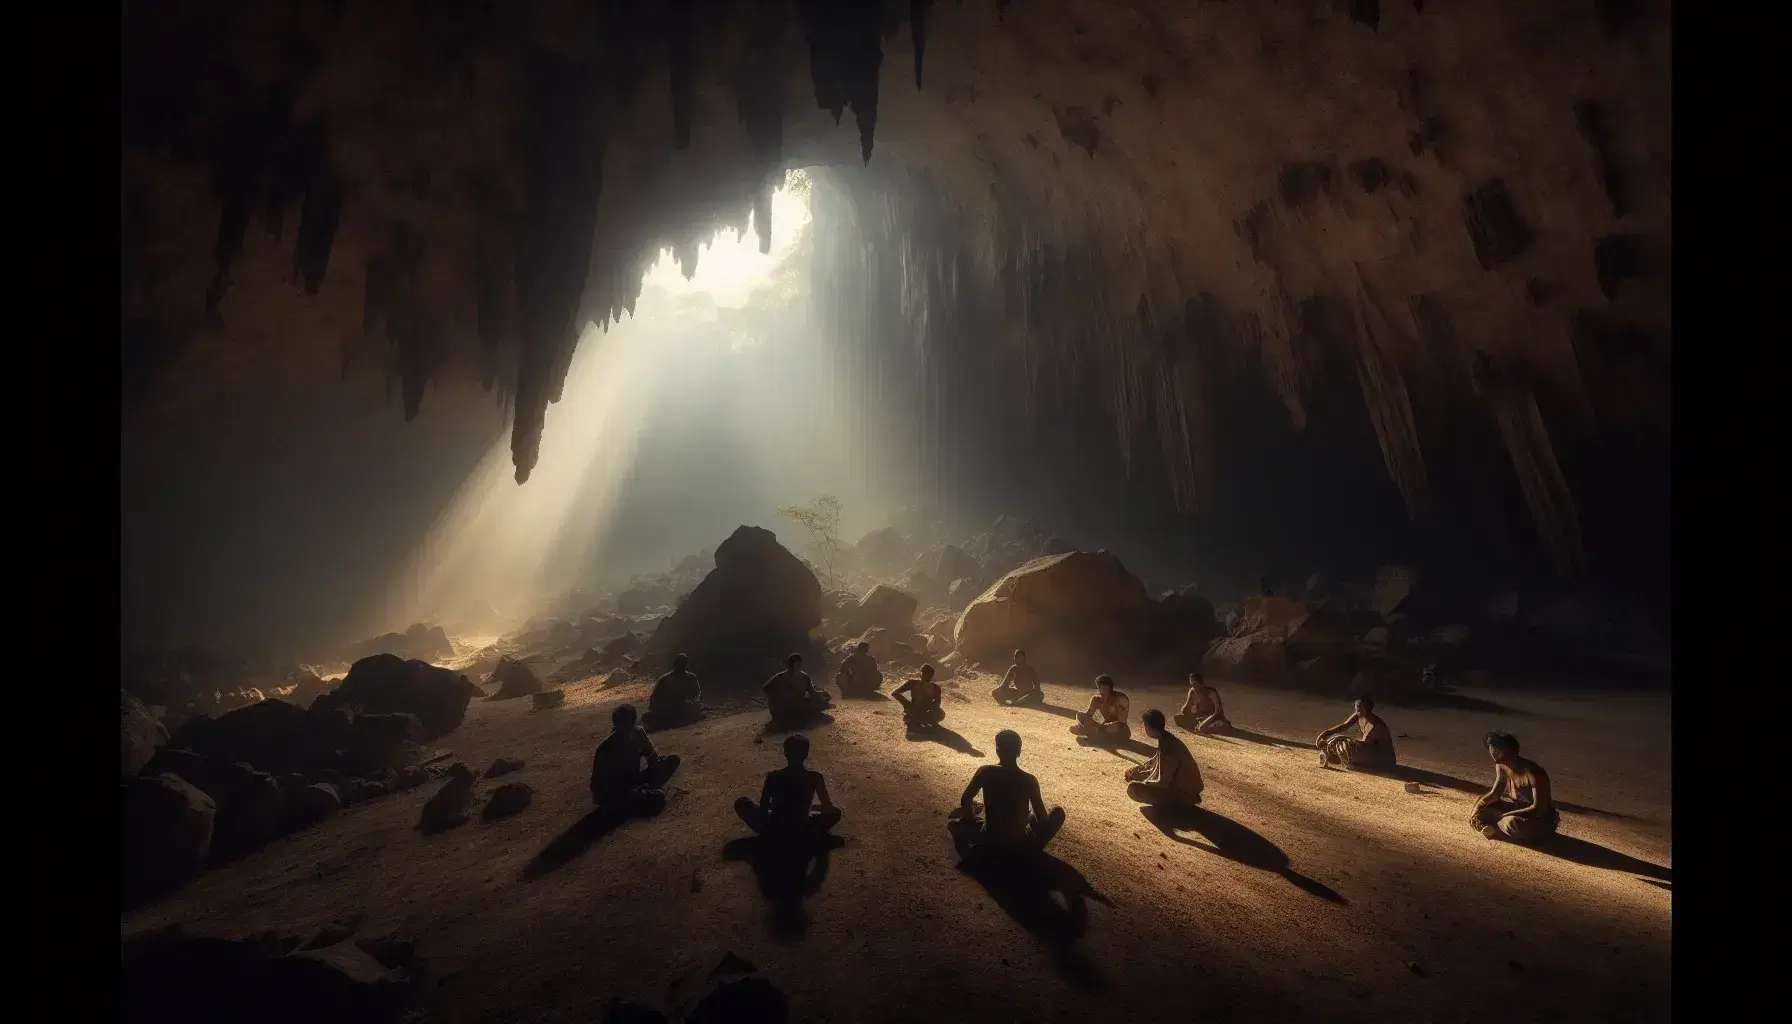 Cueva sombría con luz natural filtrándose por una abertura superior, figuras humanas atadas a formaciones rocosas y una desatándose, sin elementos modernos.